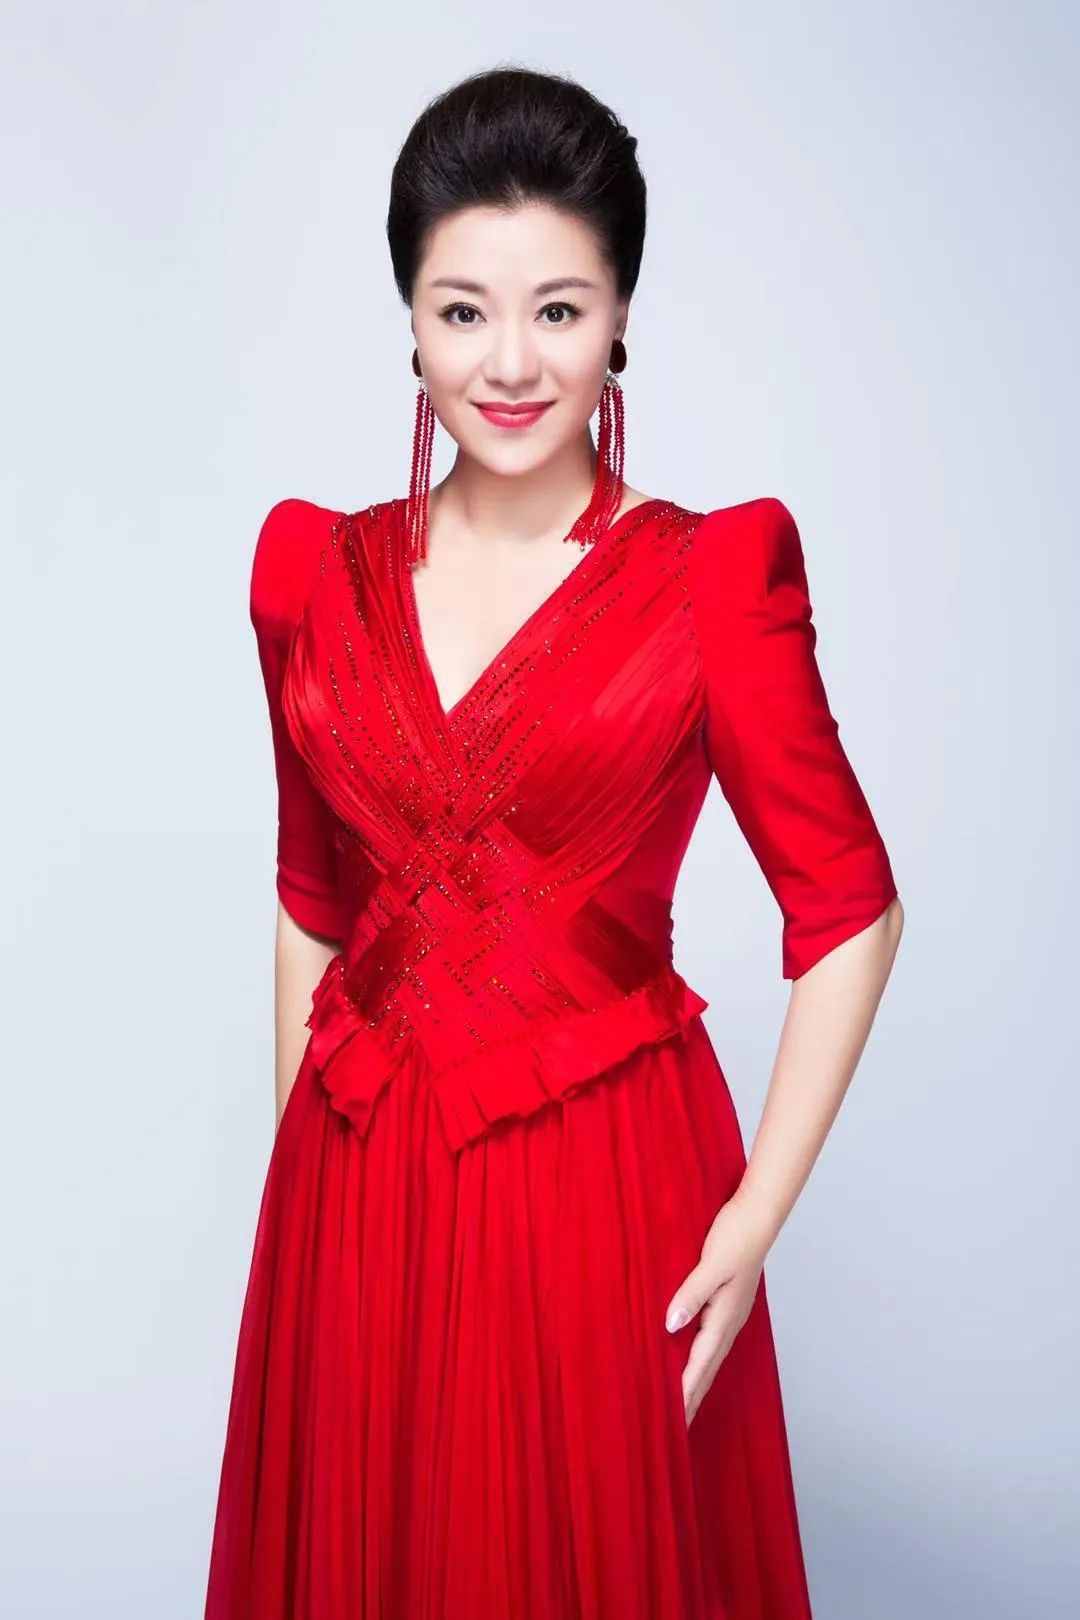 著名歌唱家王丽达倾情演唱北京广播电视台315晚会主题曲《共有的责任》